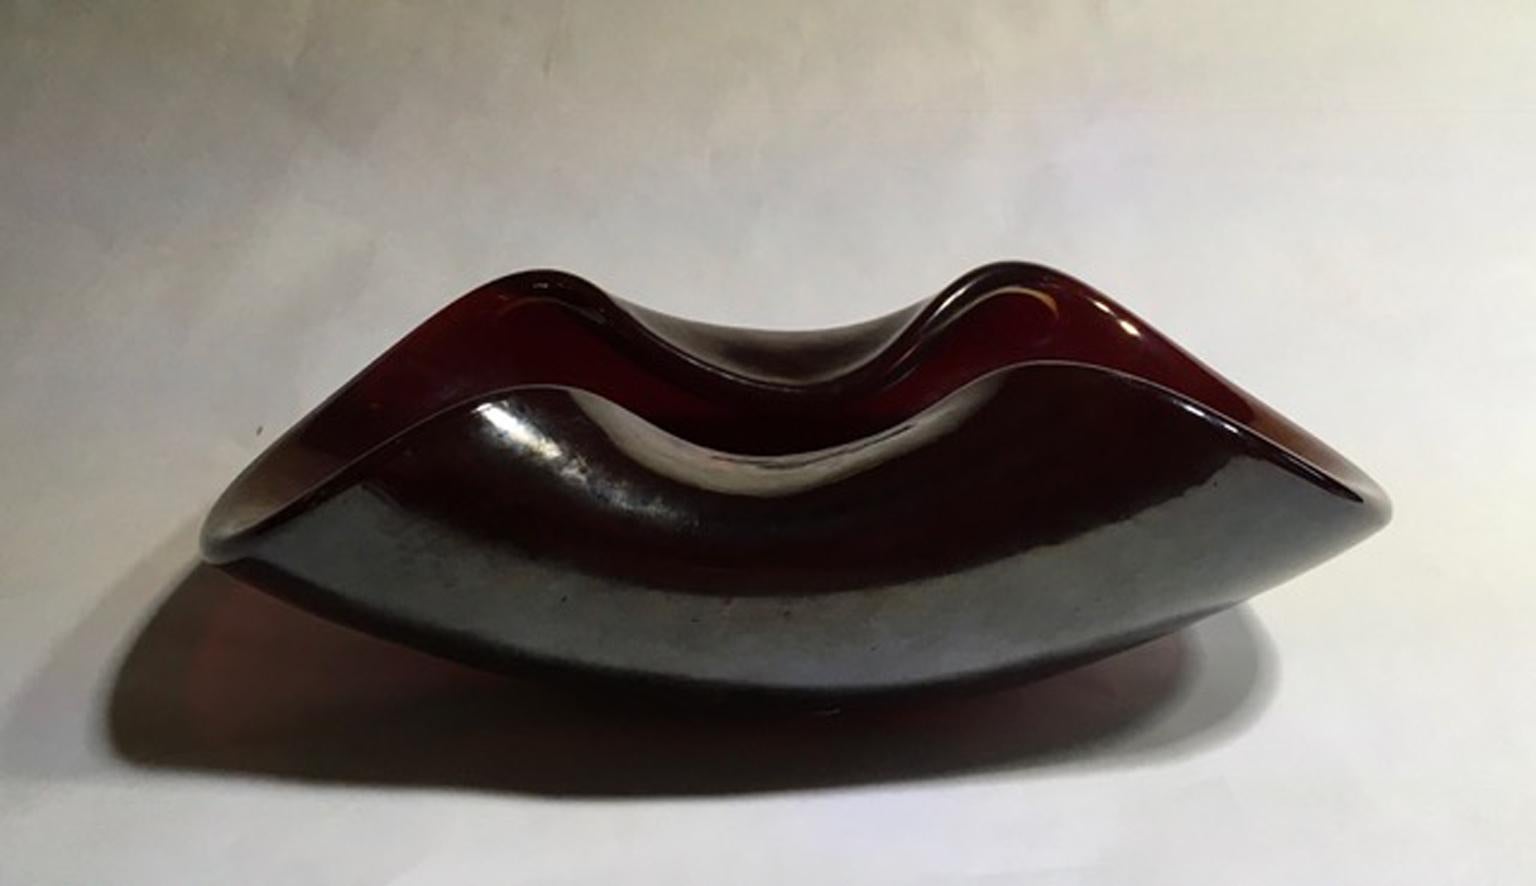 1960 Italien Mid-Century modern schillernde Rubin Farbe geblasen Paste Glasschale

Mit Echtheitszertifikat